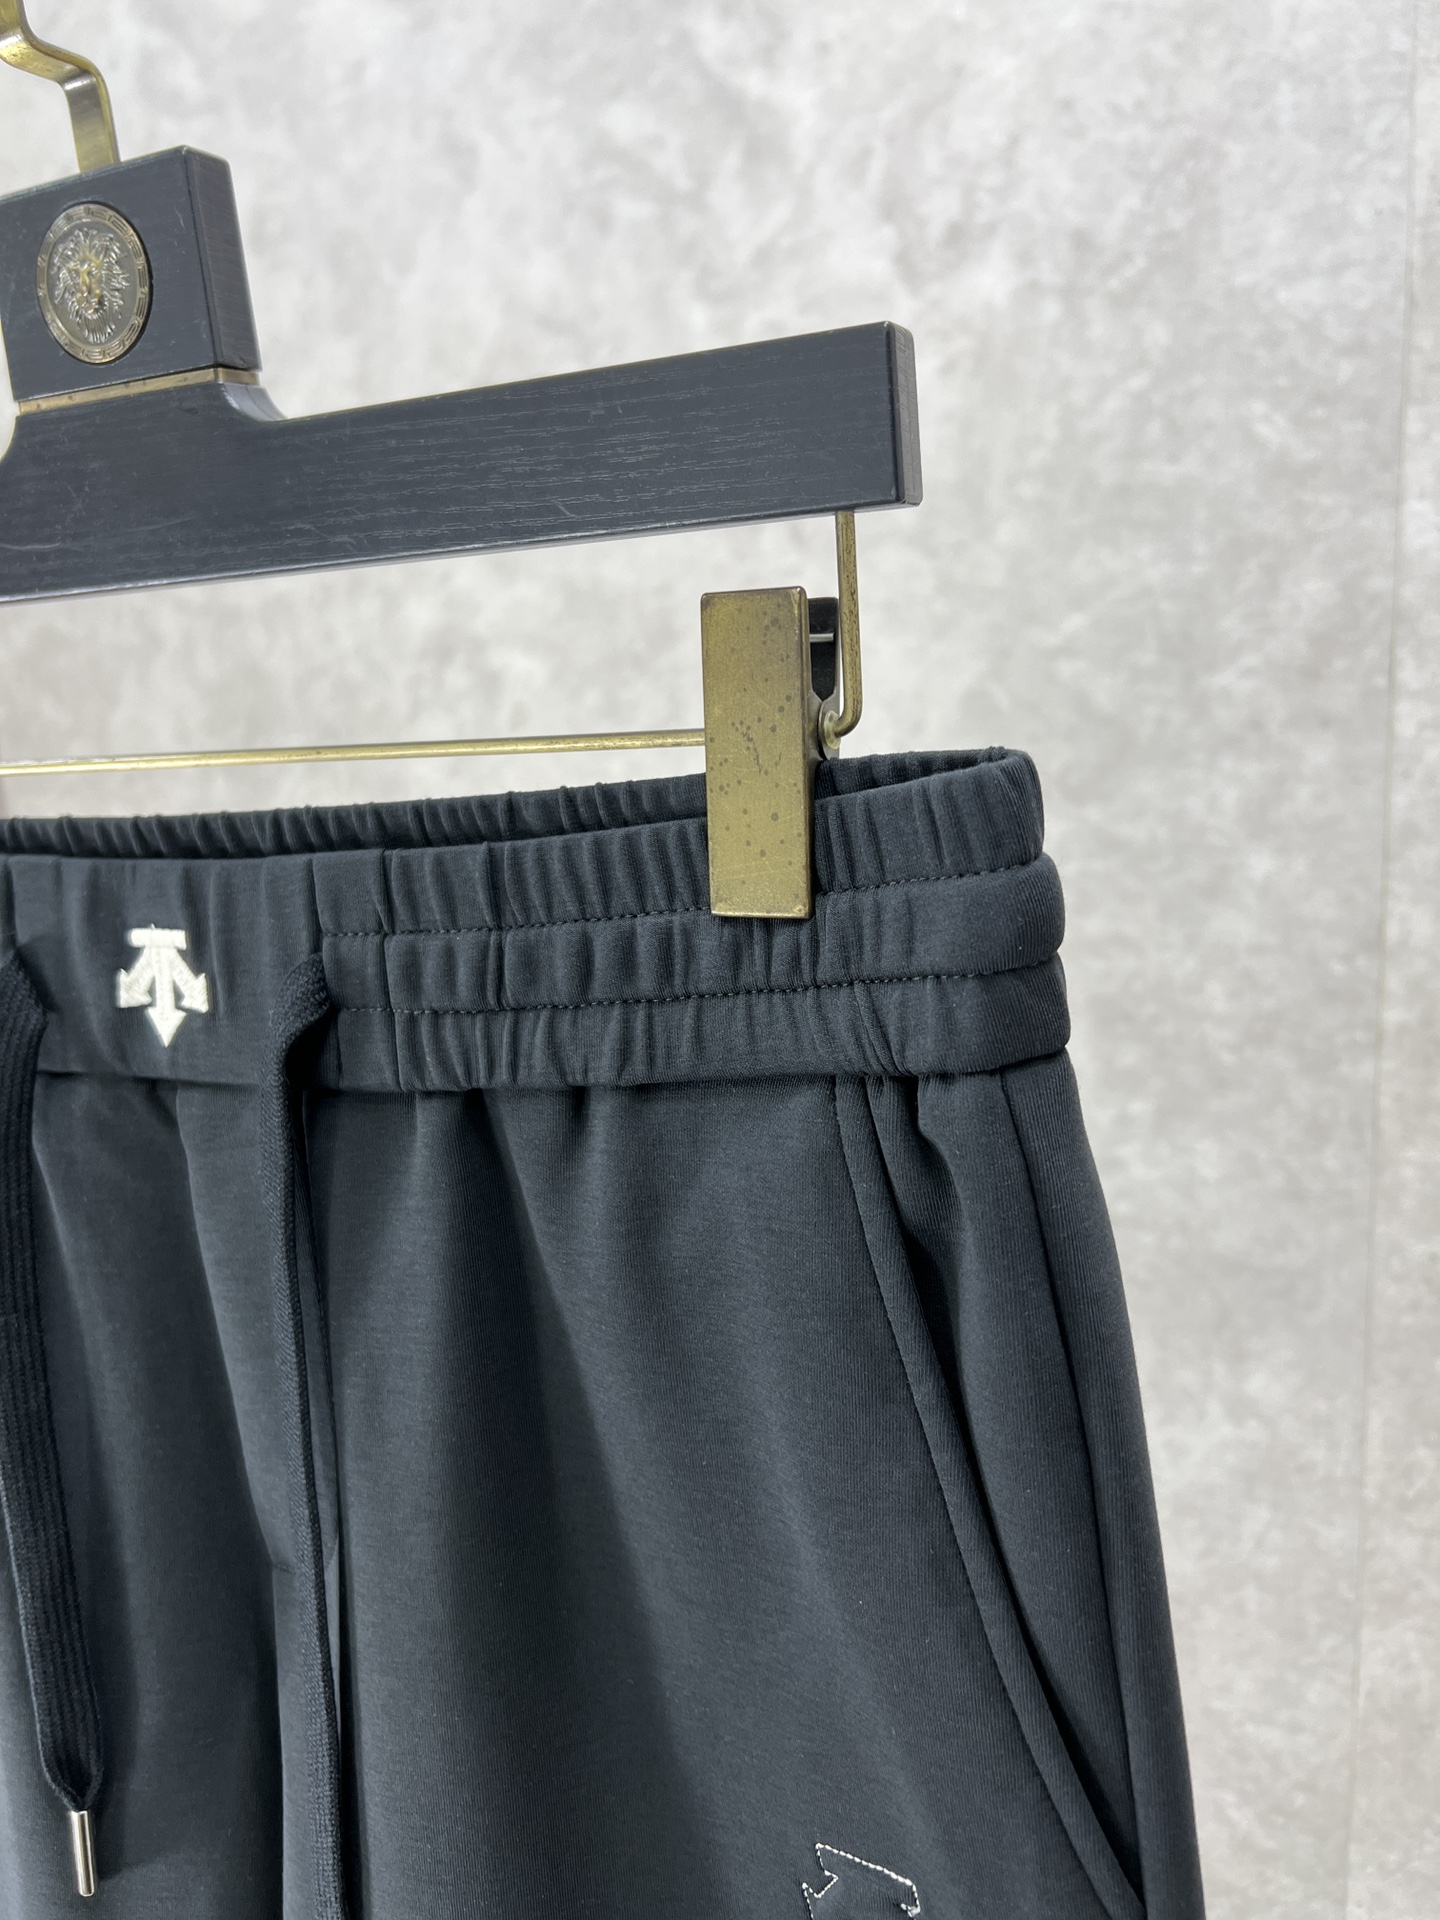 DESCENTE迪桑特24SS春夏新品男士休闲运动短裤甄选优质面料打造简约舒适独特设计缔造简约线条感版型